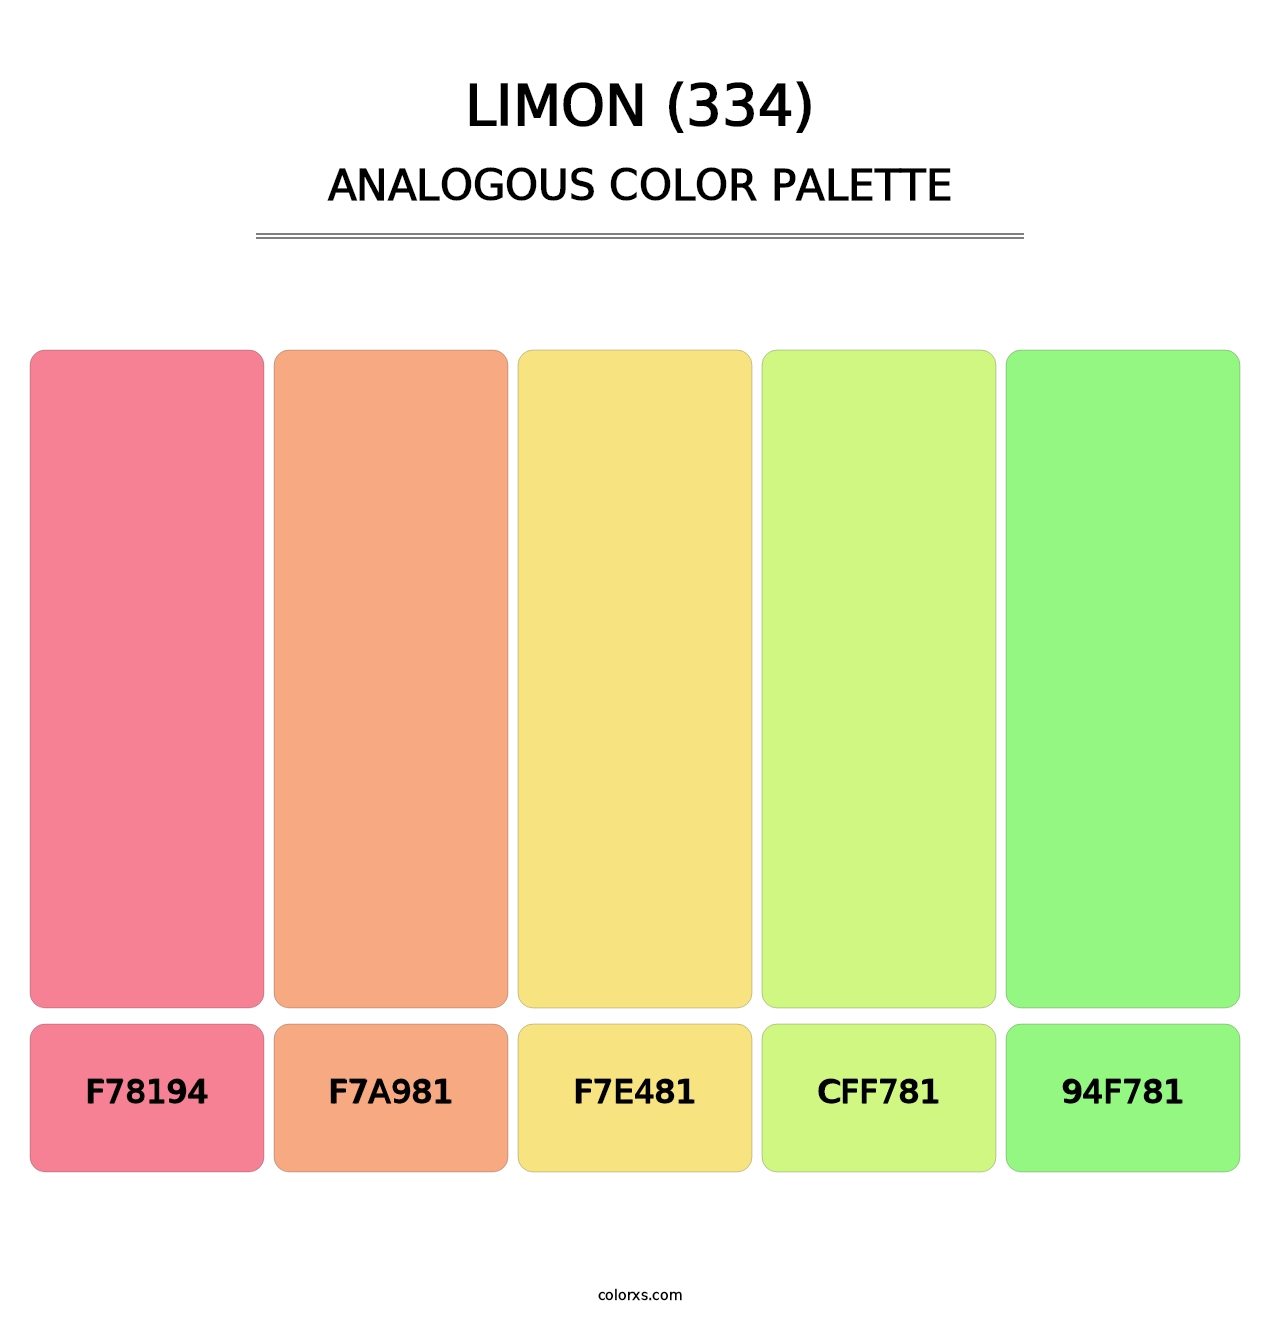 Limon (334) - Analogous Color Palette